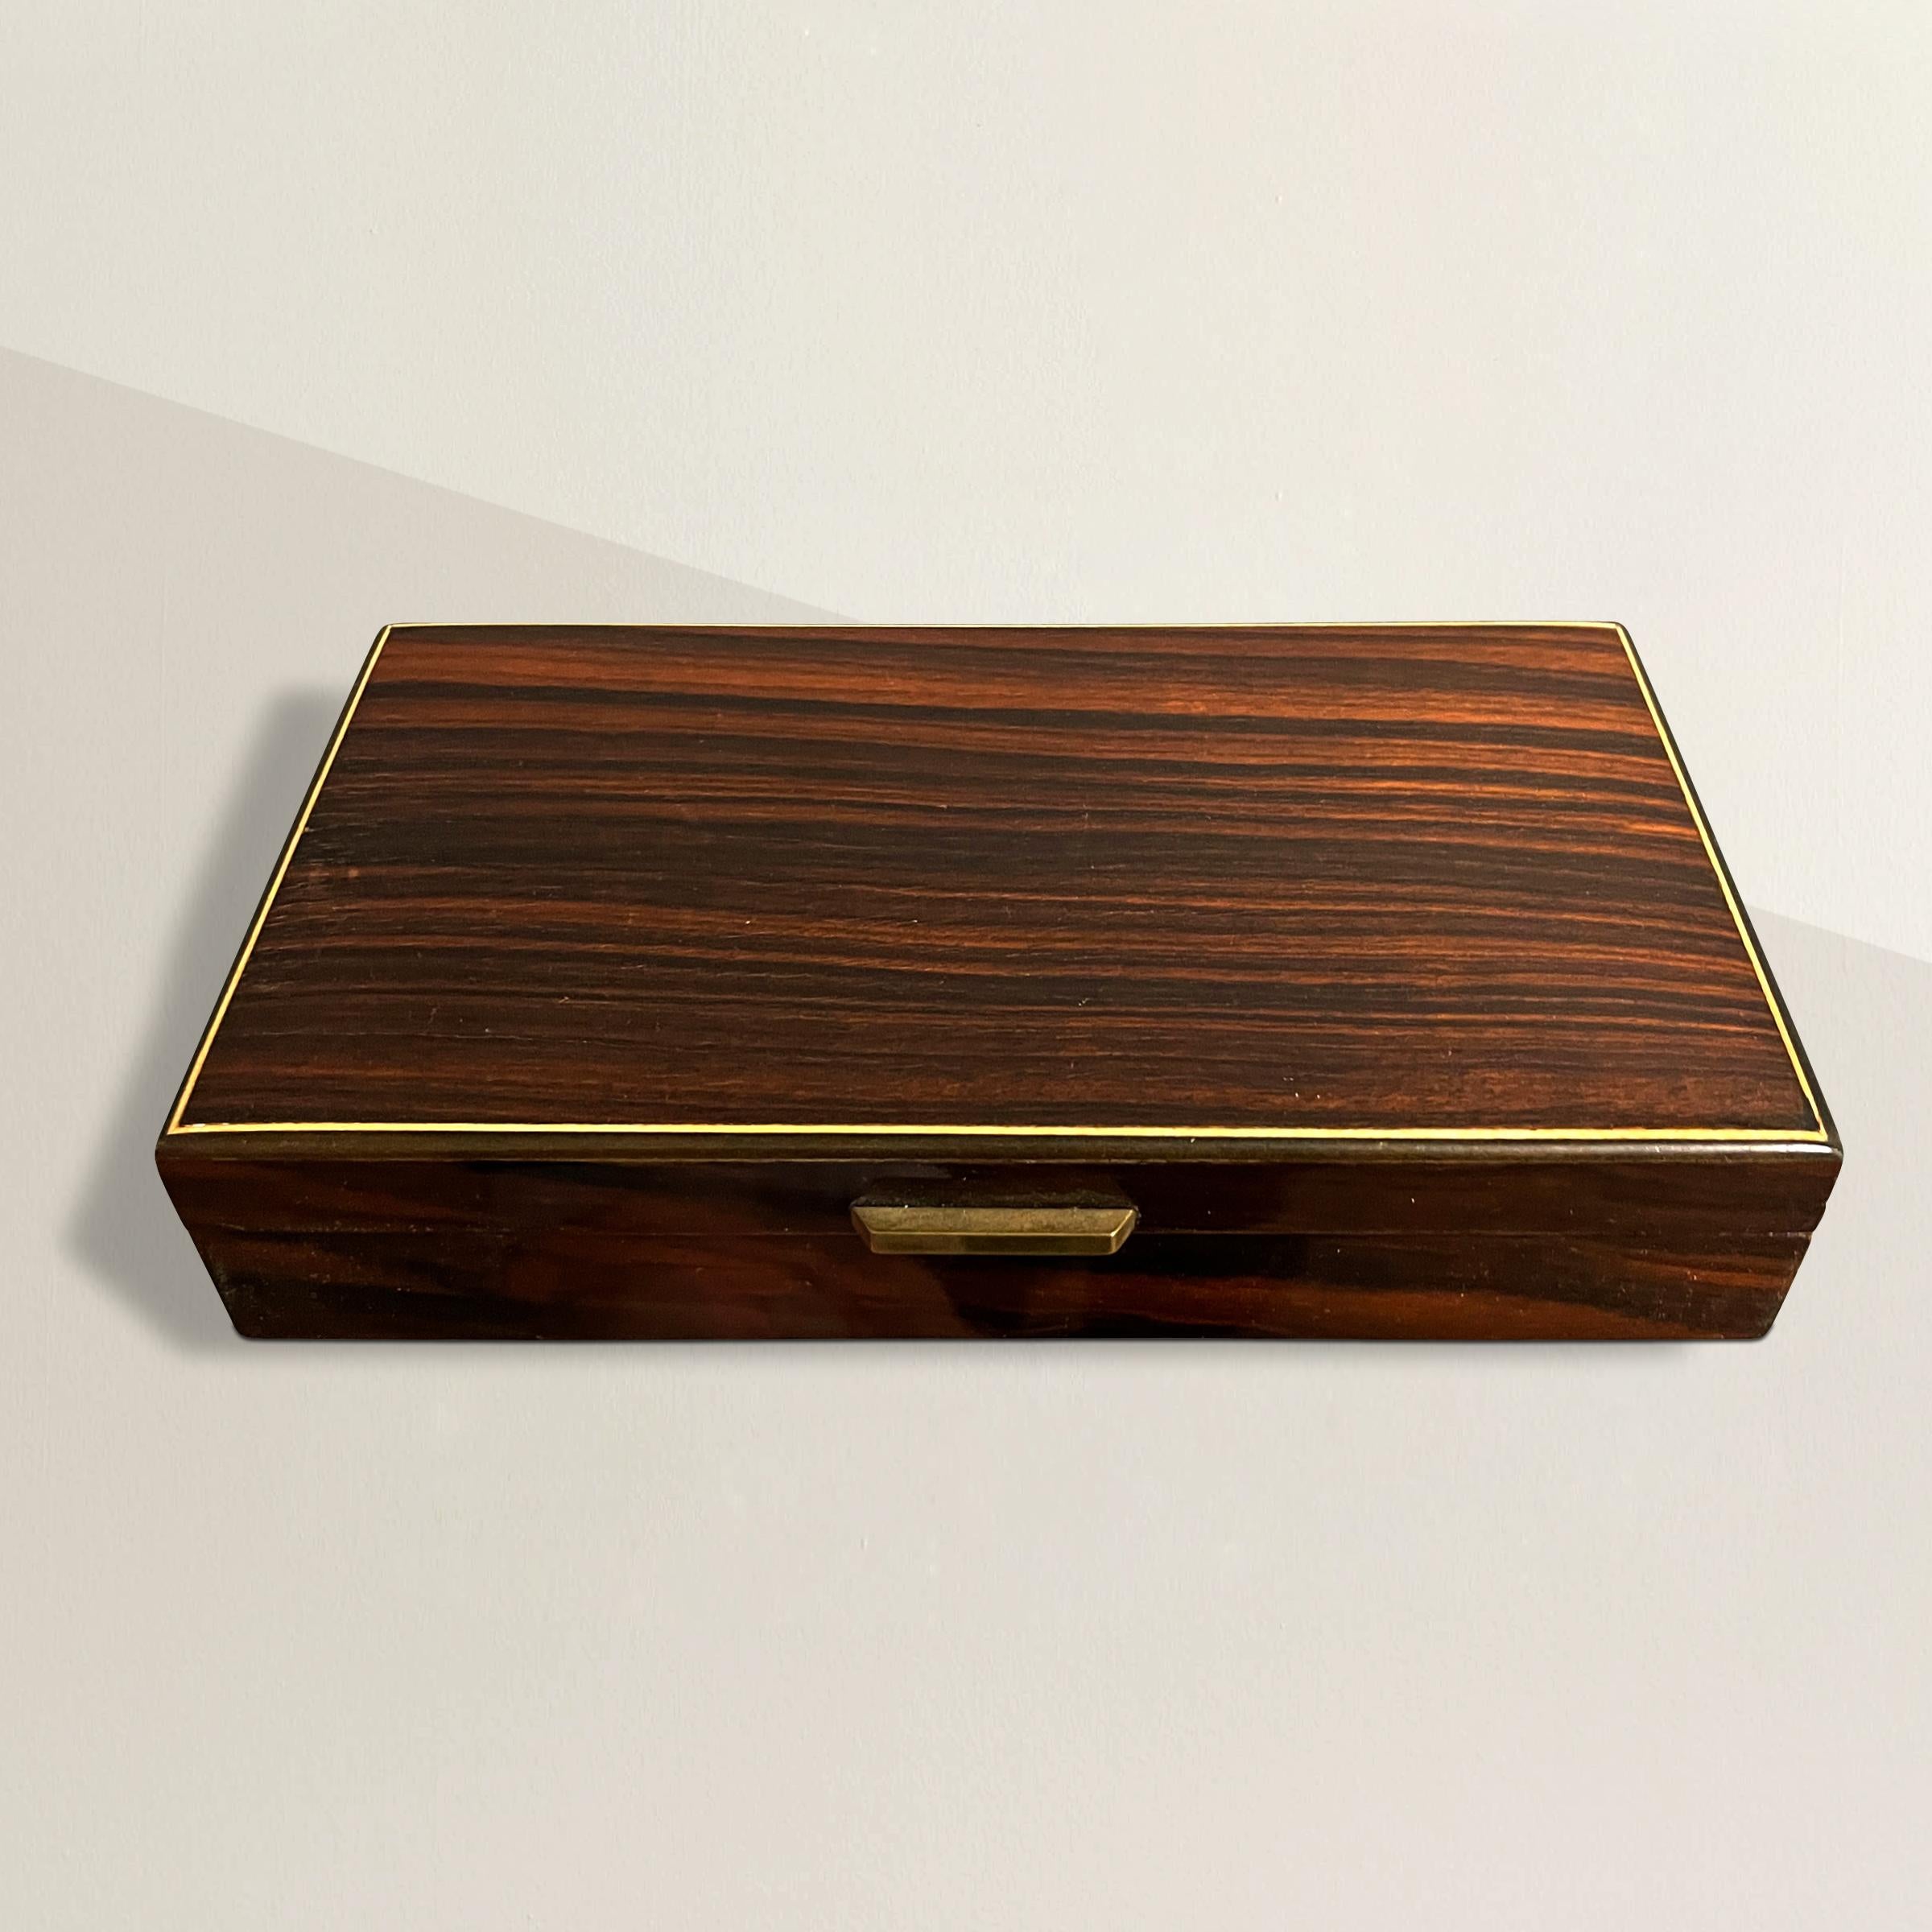 Eine auffällige österreichische Schachtel aus dem frühen 20. Jahrhundert mit Ebenholzfurnier über Birke und einem dünnen Streifen aus Fruchtholz als Intarsie auf dem Deckel. Mit einem einfachen Messinggriff lässt sich der Deckel öffnen. Perfekt für